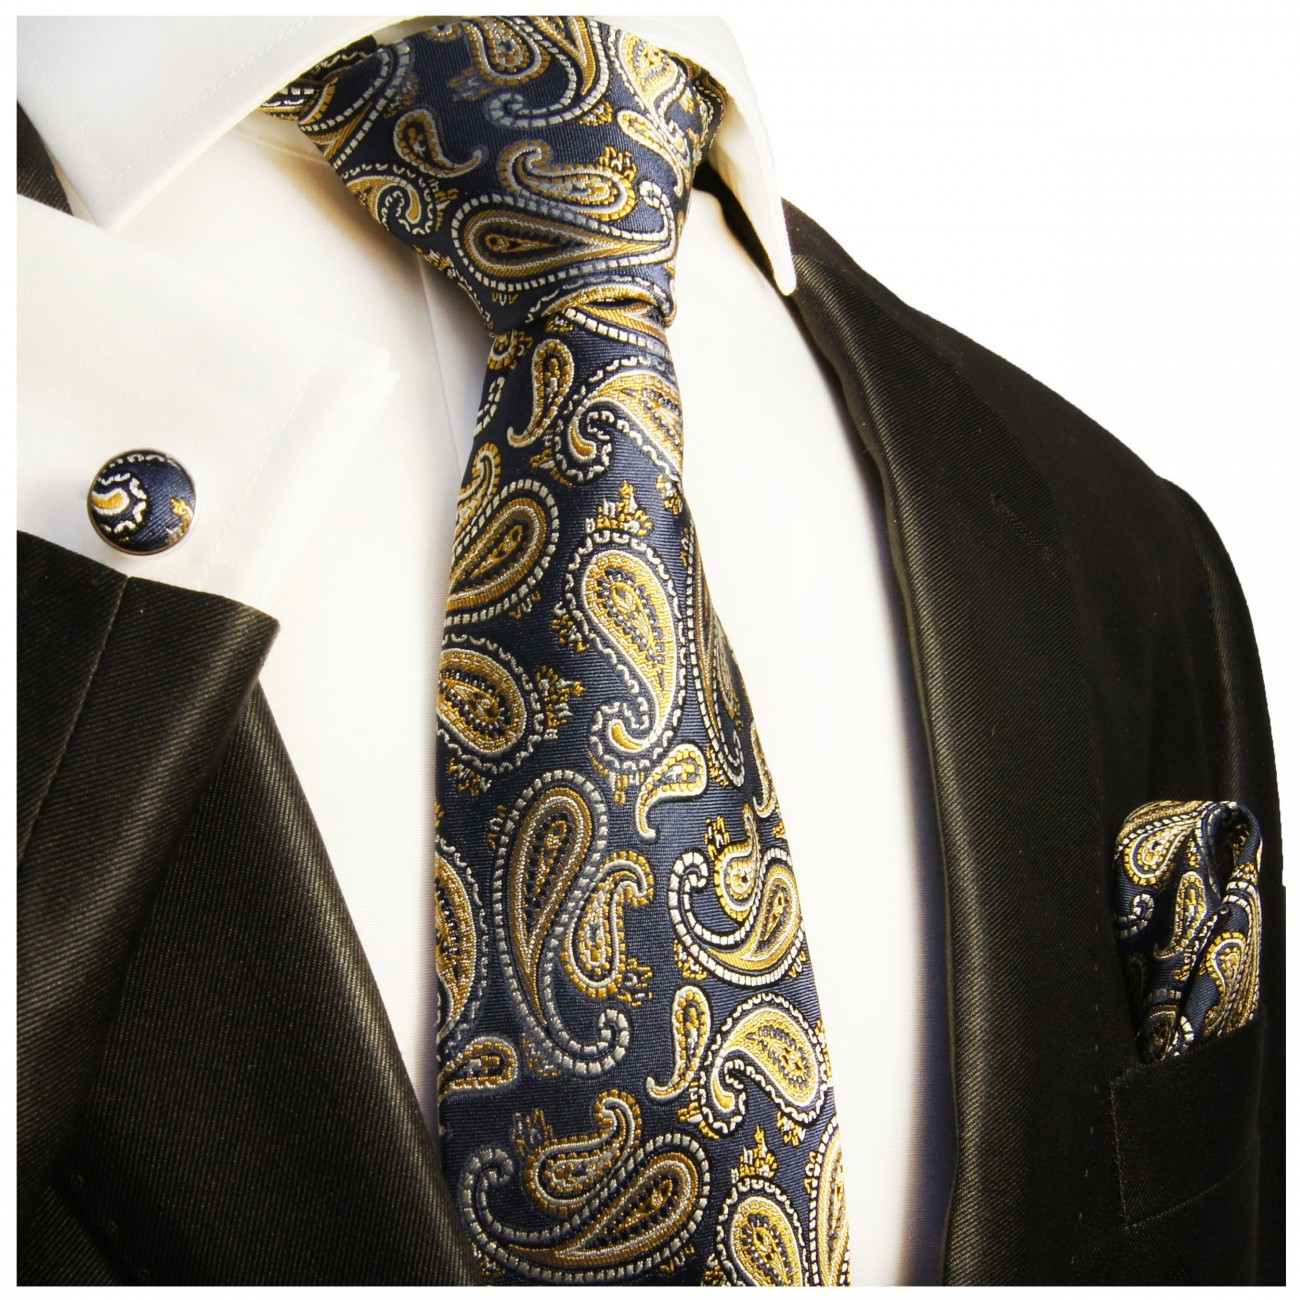 Krawatte marine blau mit Einstecktuch und Manschettenknöpfe gold paisley Seide 365